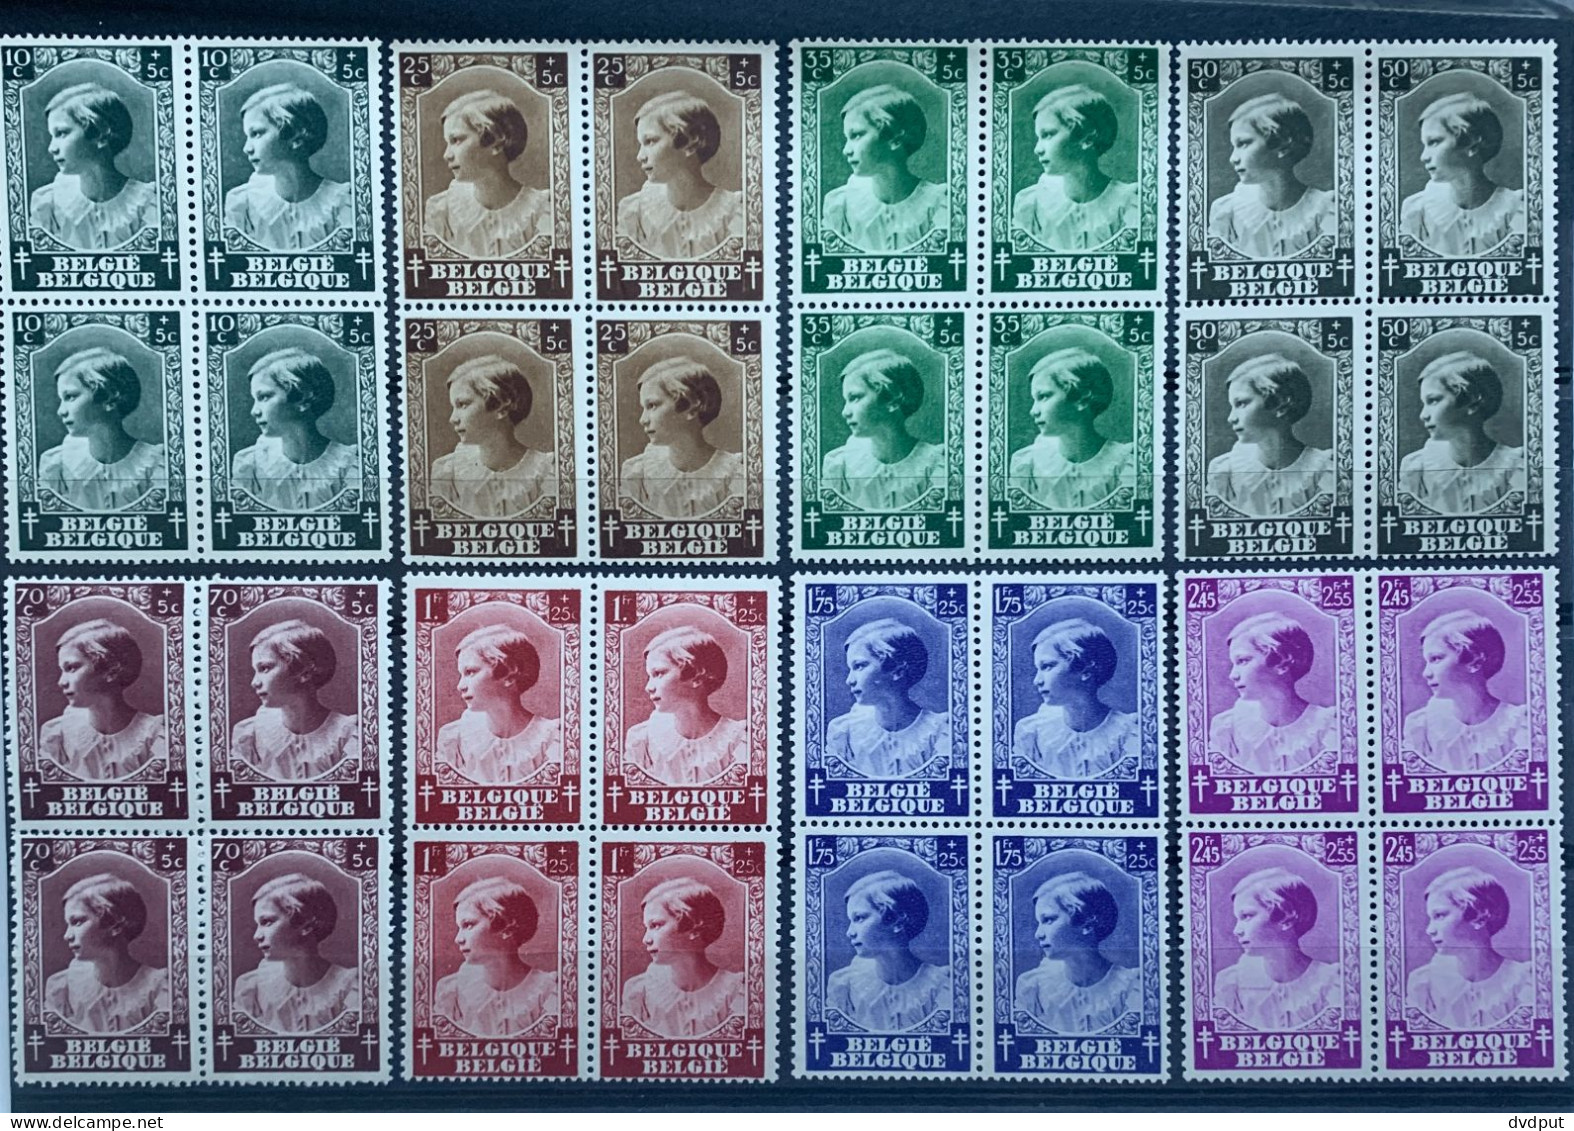 België, 1937, Nr 458/65, Postfris**, In Blokken Van 4, OBP 120€ - Unused Stamps